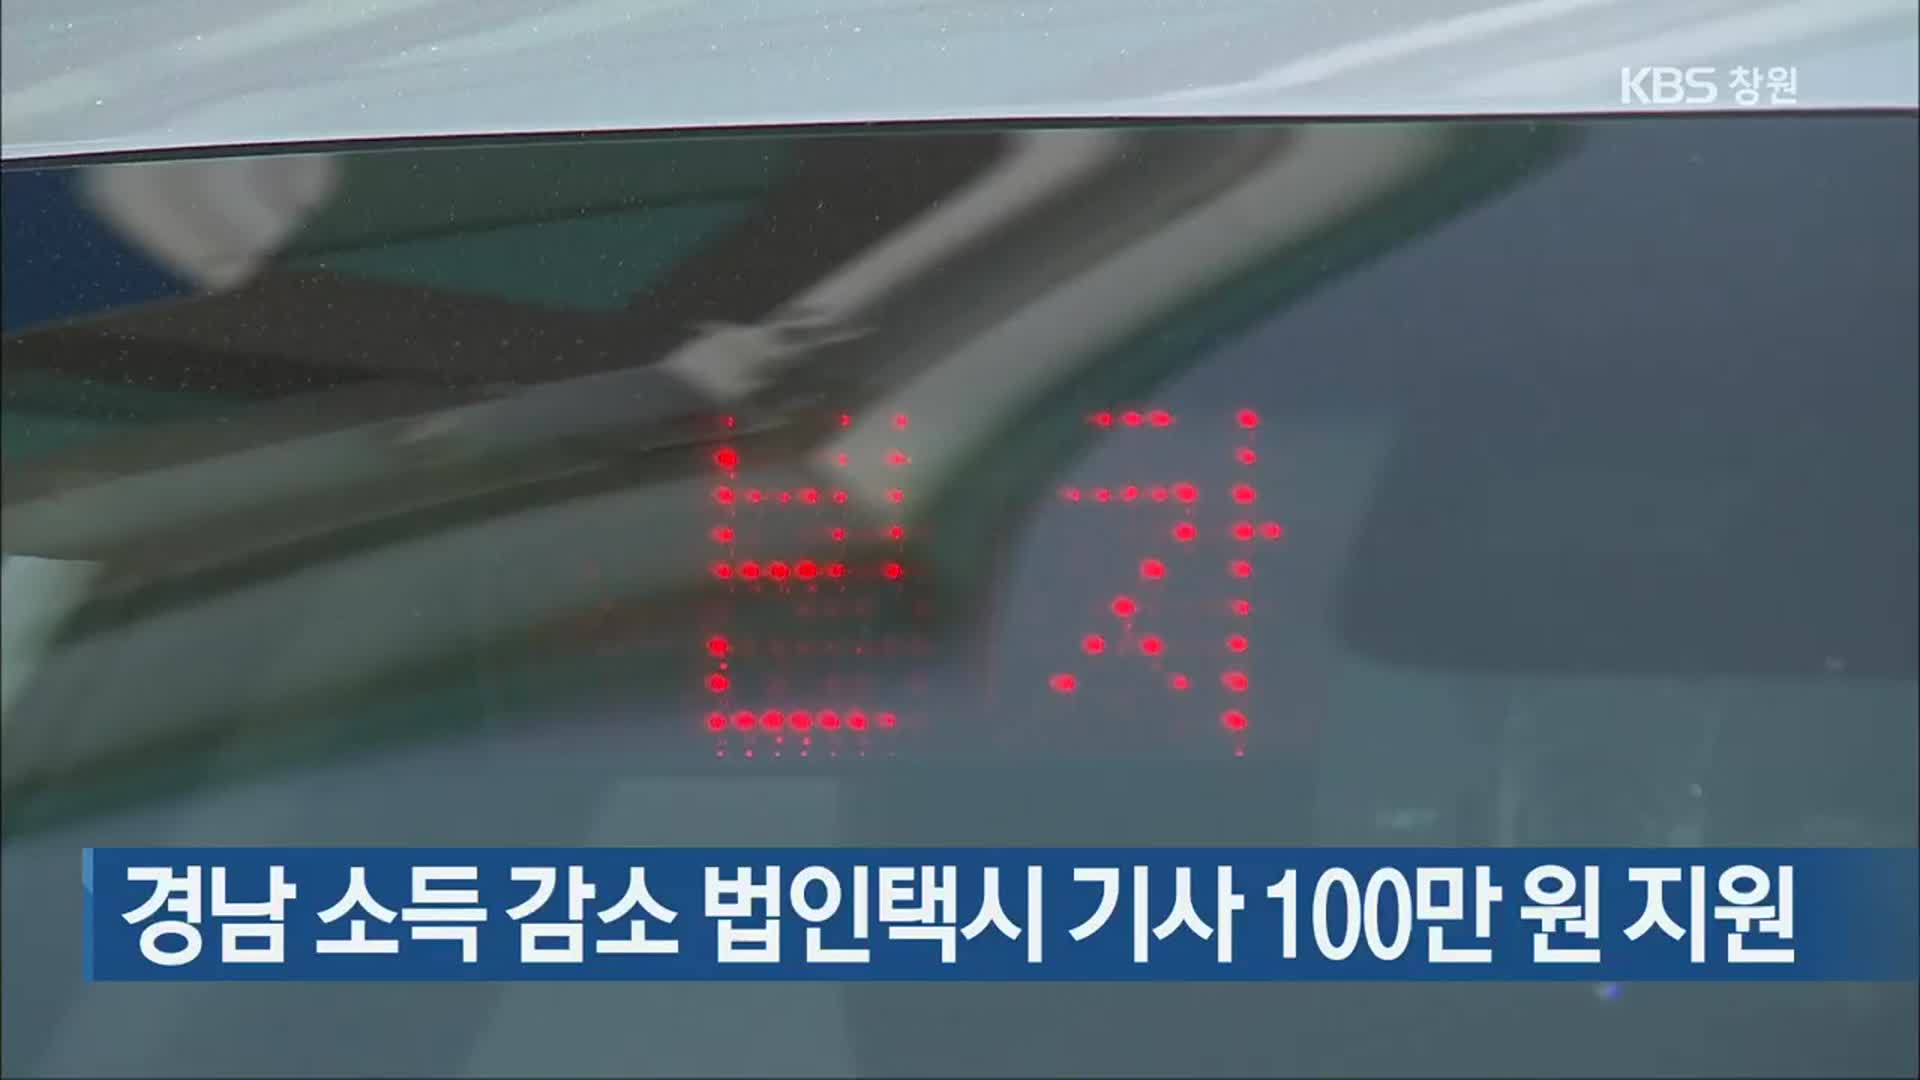 경남 소득 감소 법인택시 기사 100만 원 지원